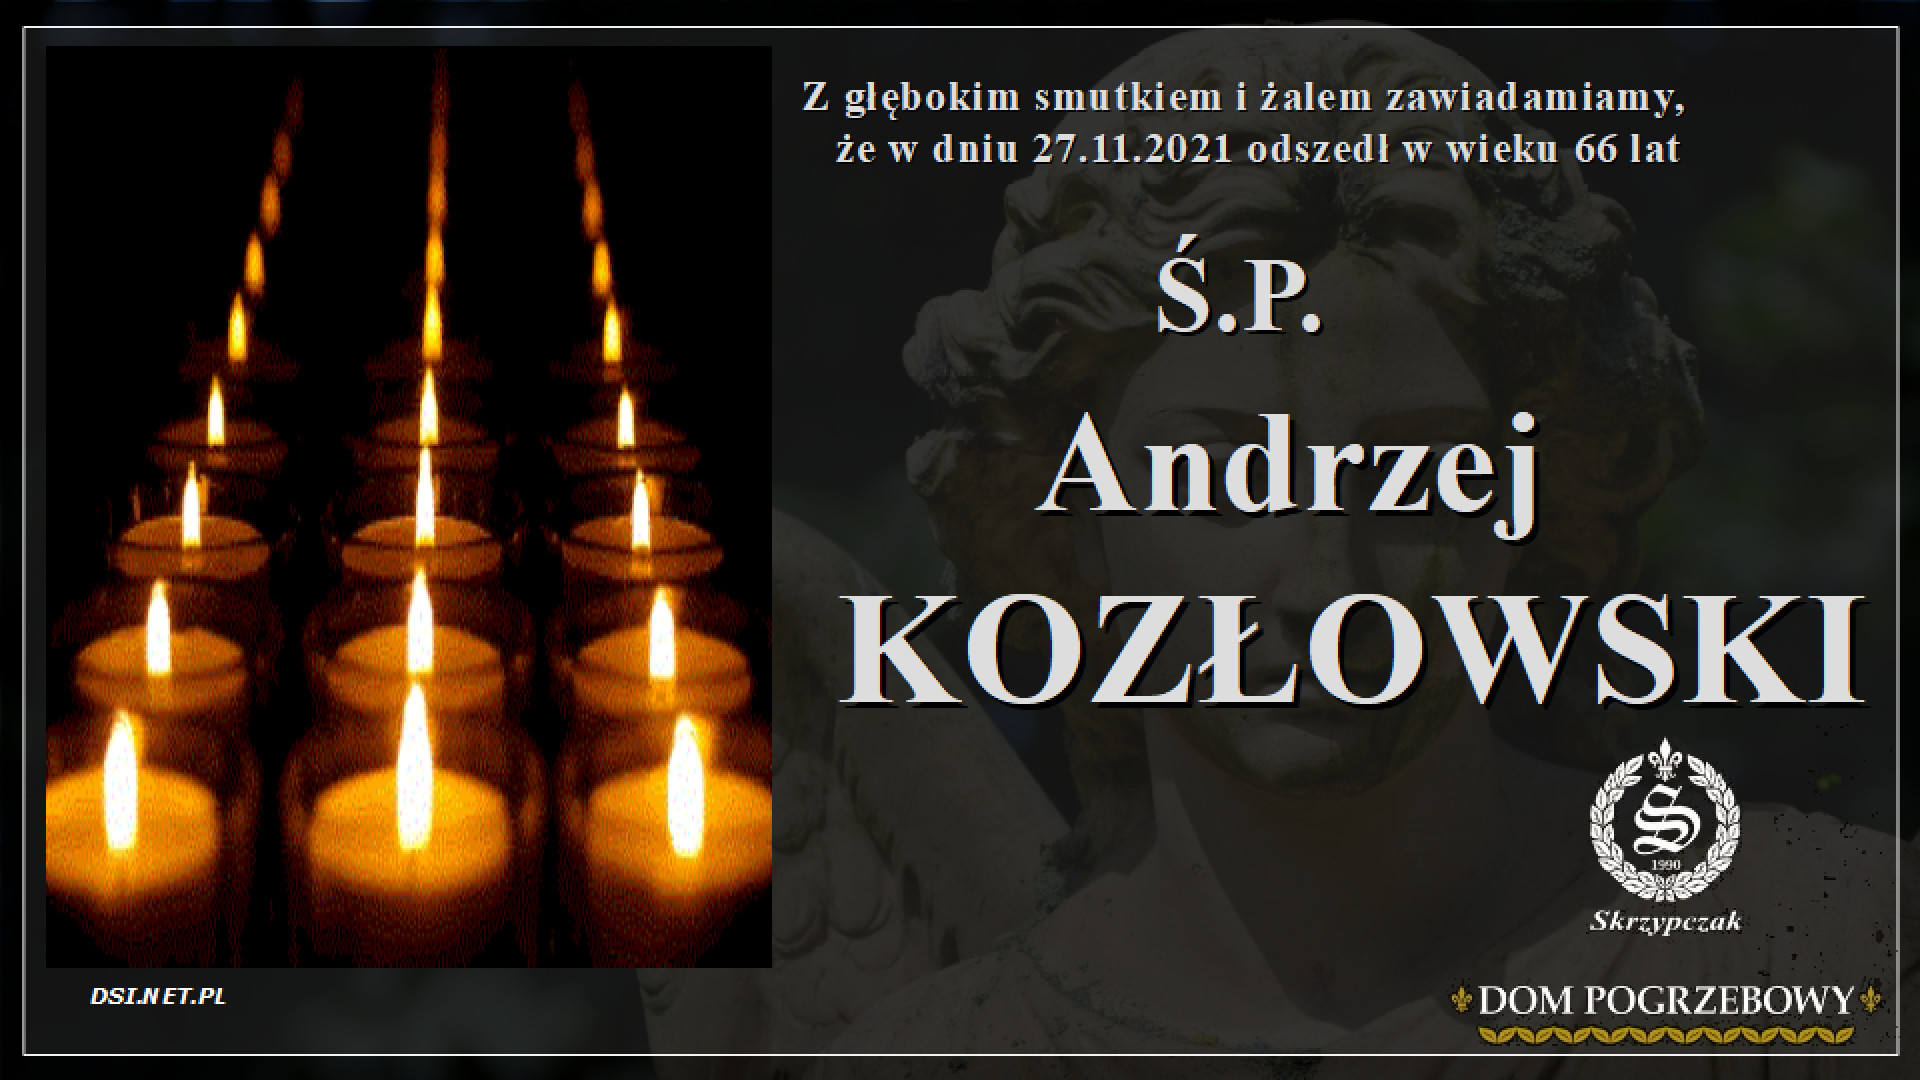 Ś.P. Andrzej Kozłowski